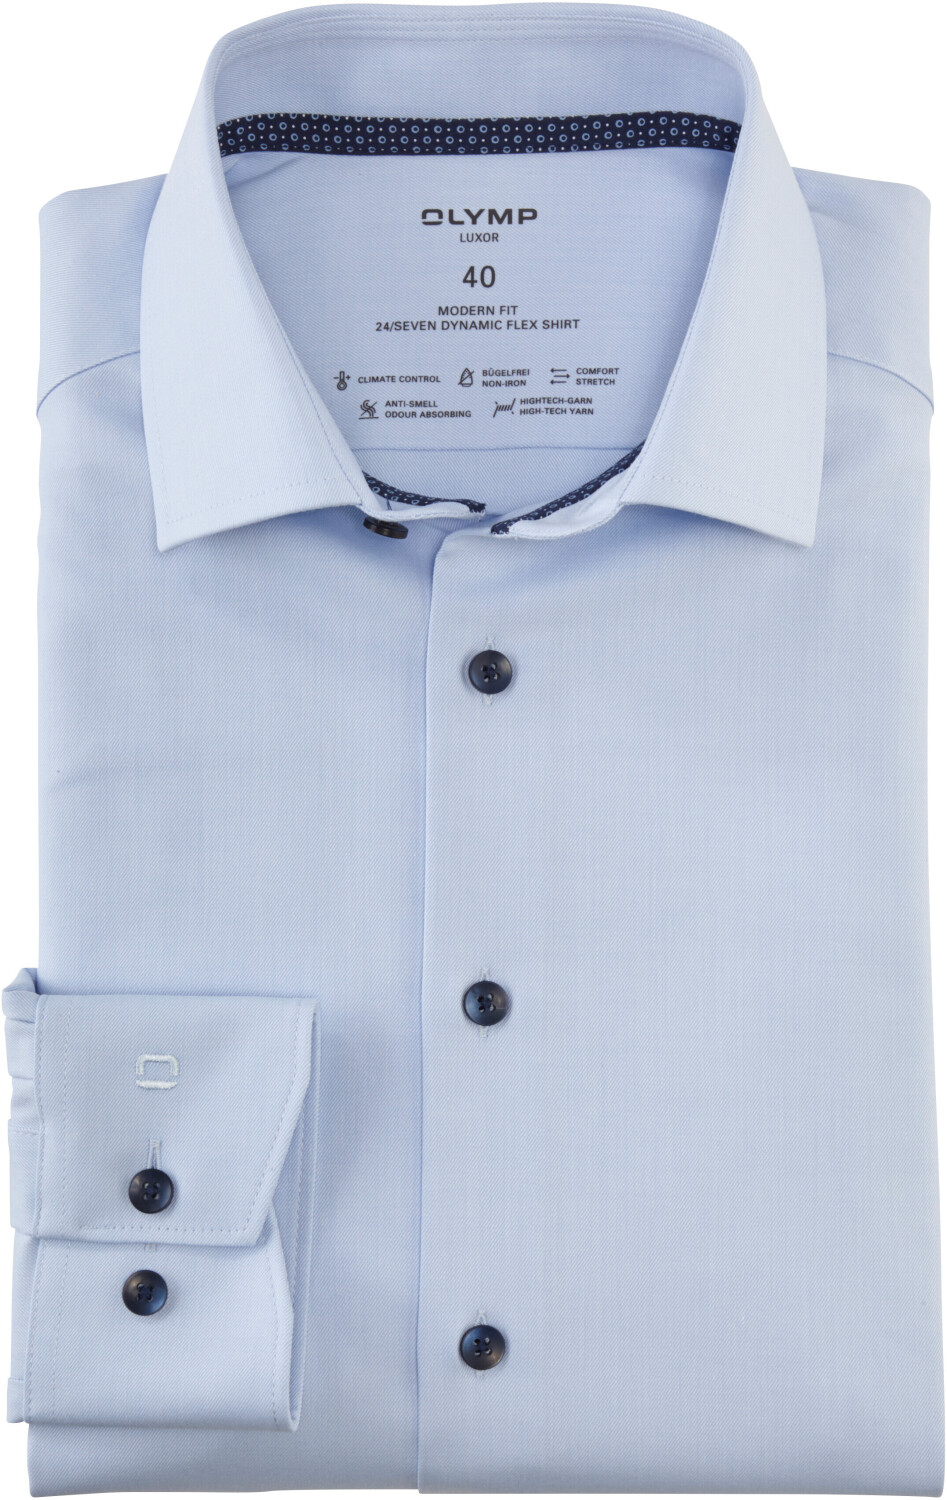 OLYMP Luxor 24/Seven Hemd Modern Fit Global Kent bleu (7086-41-11) ab 50,83  € | Preisvergleich bei